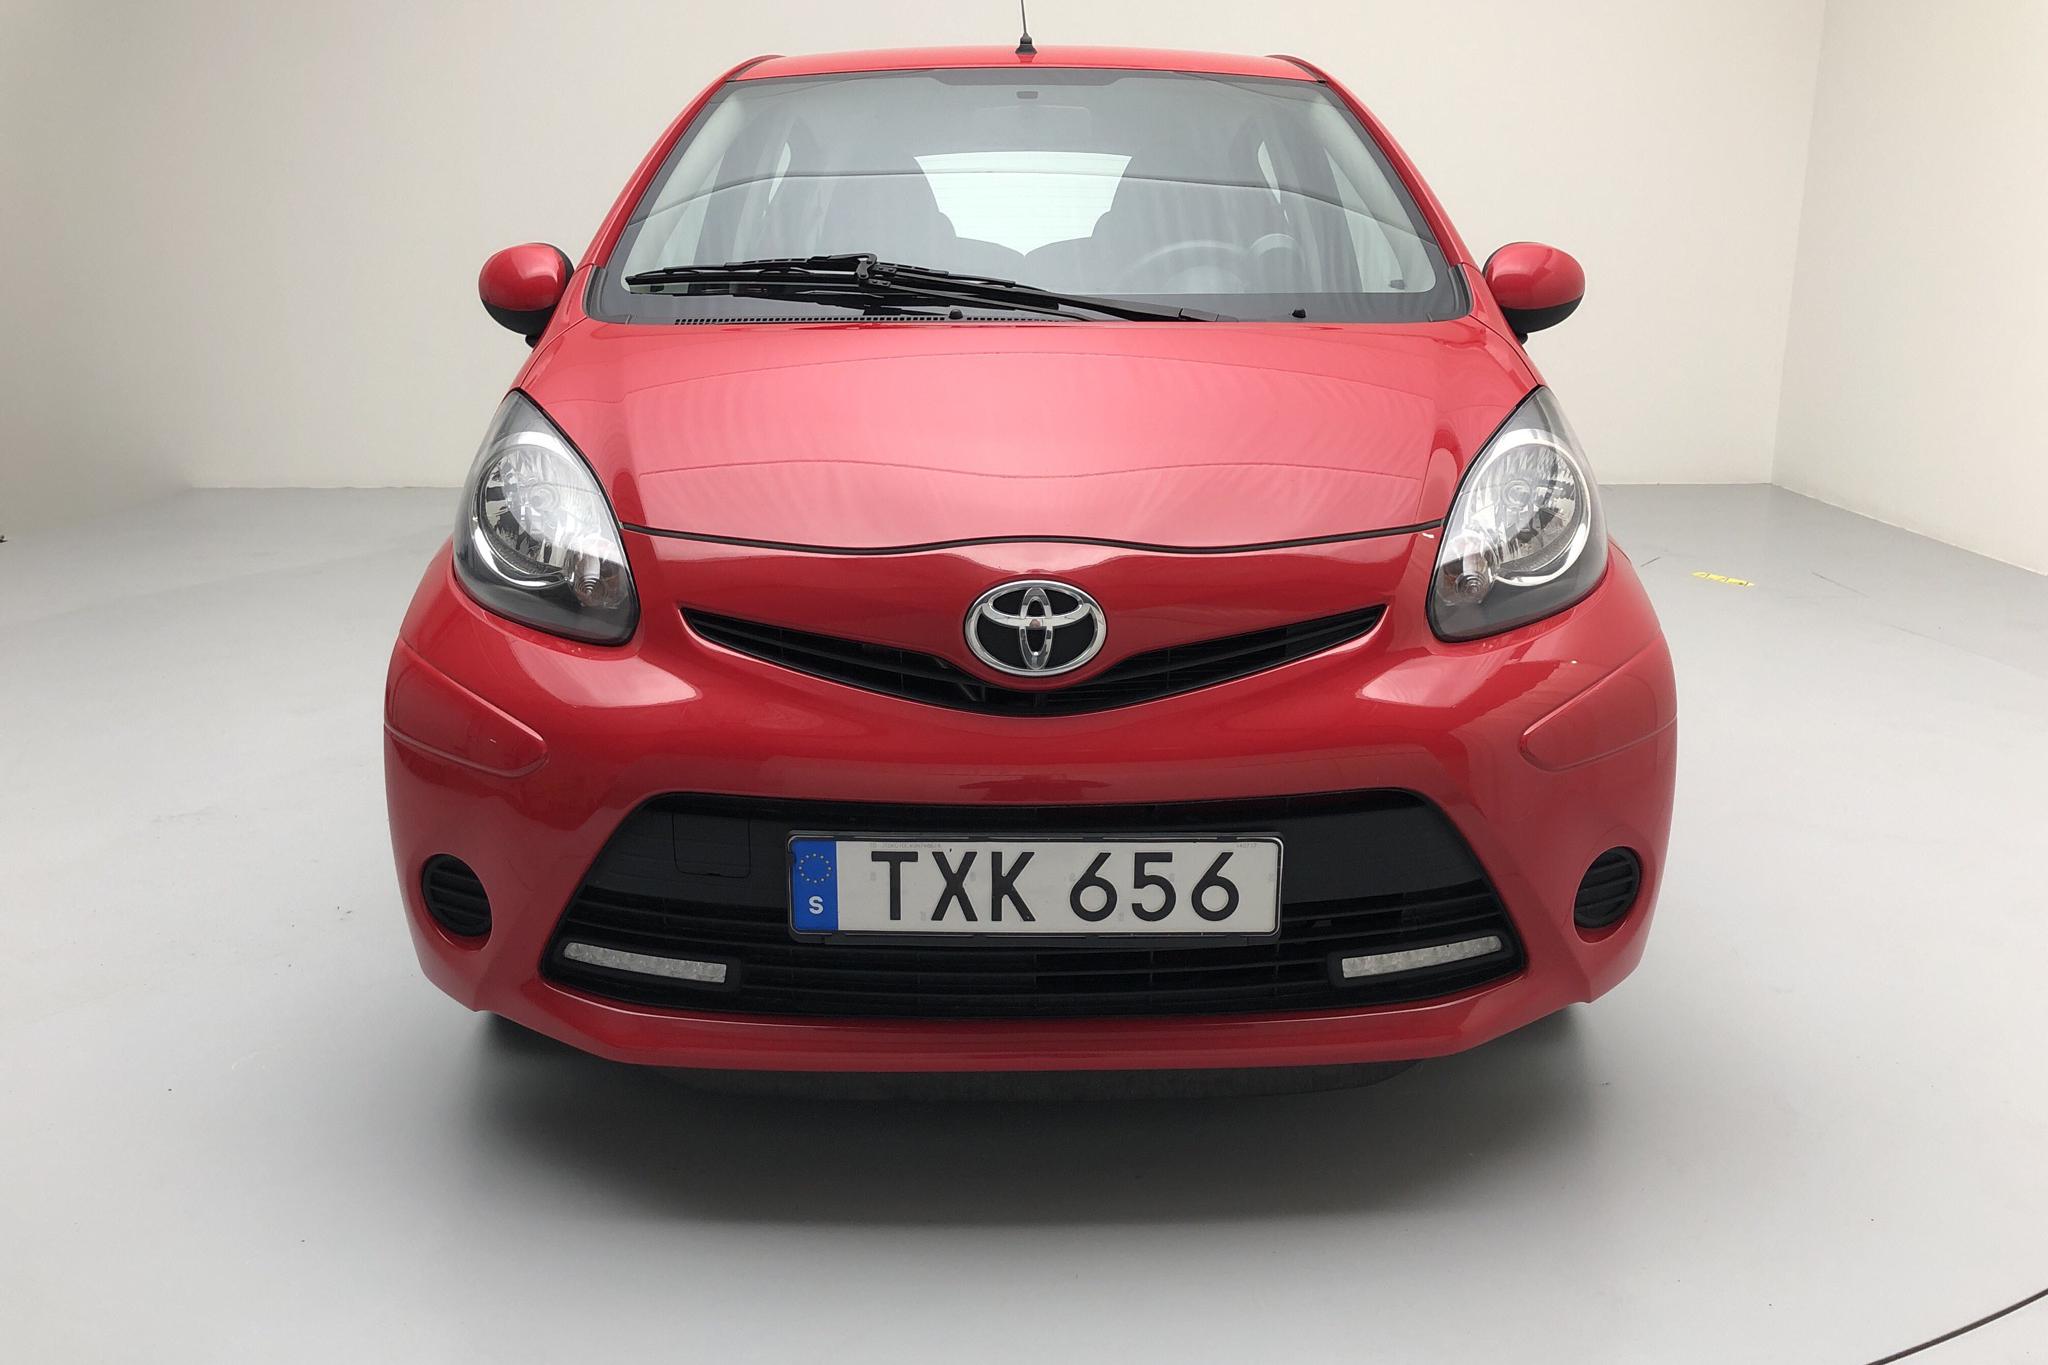 Toyota Aygo 1.0 VVT-i 5dr (68hk) - 6 952 mil - Manuell - röd - 2014